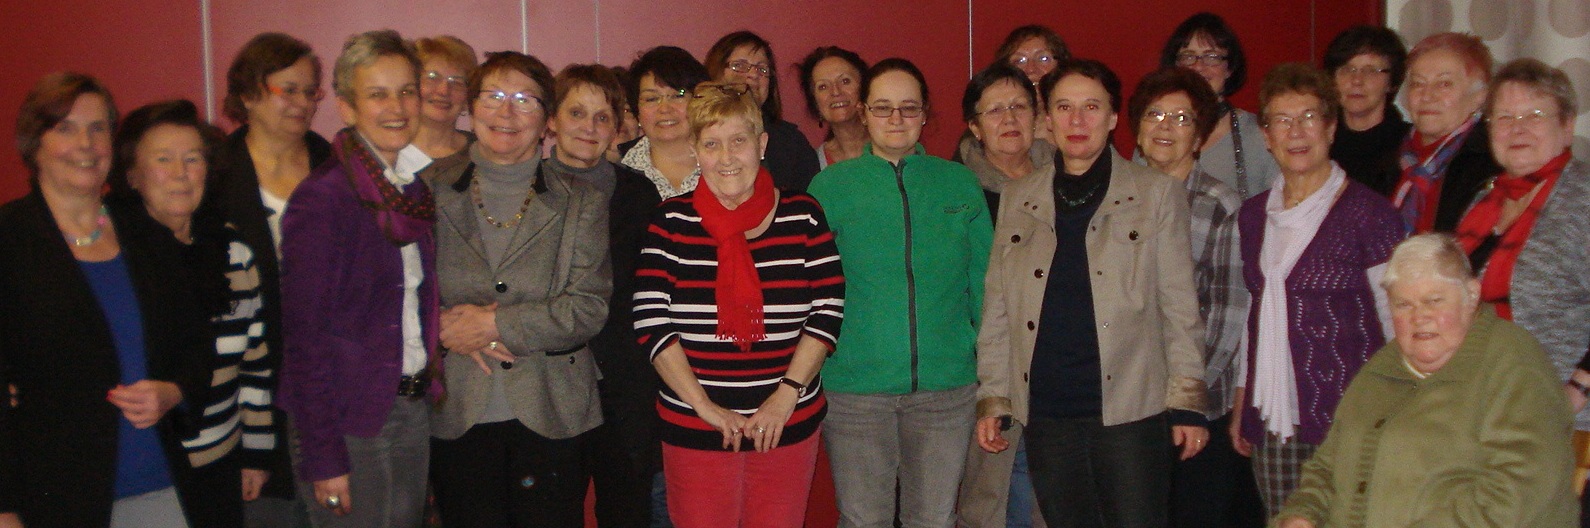 Gute Stimmung bei den Vorstandswahlen der Arbeitsgemeinschaft Sozialdemokratischer Frauen (ASF)